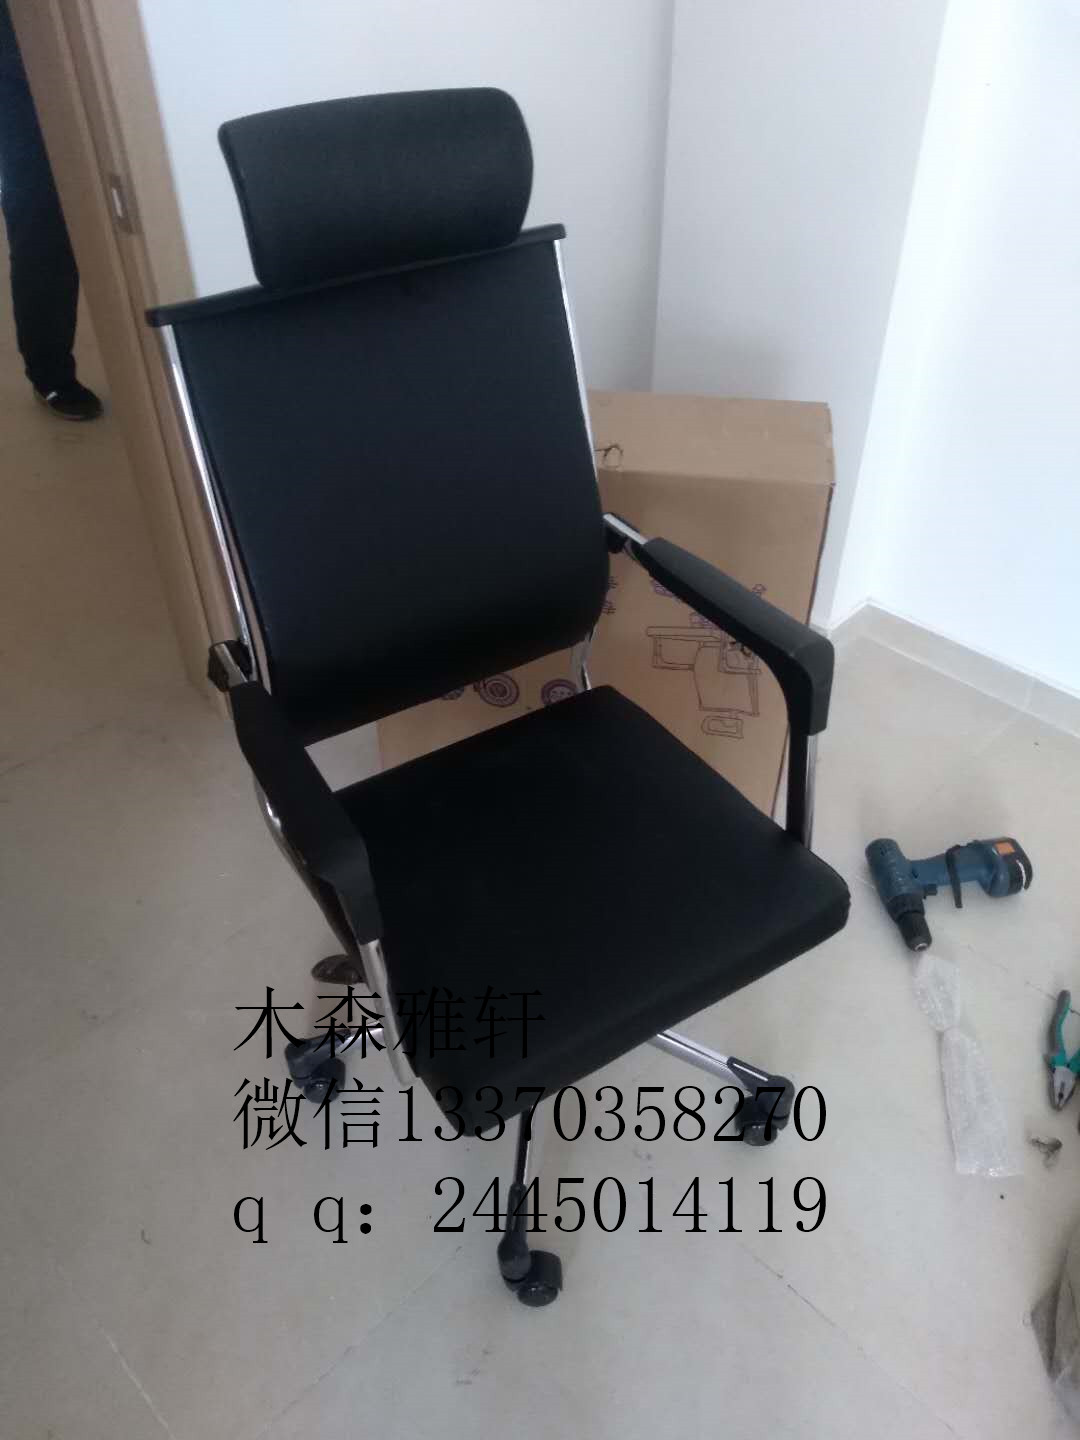 办公家具厂出售班前椅弓形培训椅员工椅送货安装定做价格量大从优图片